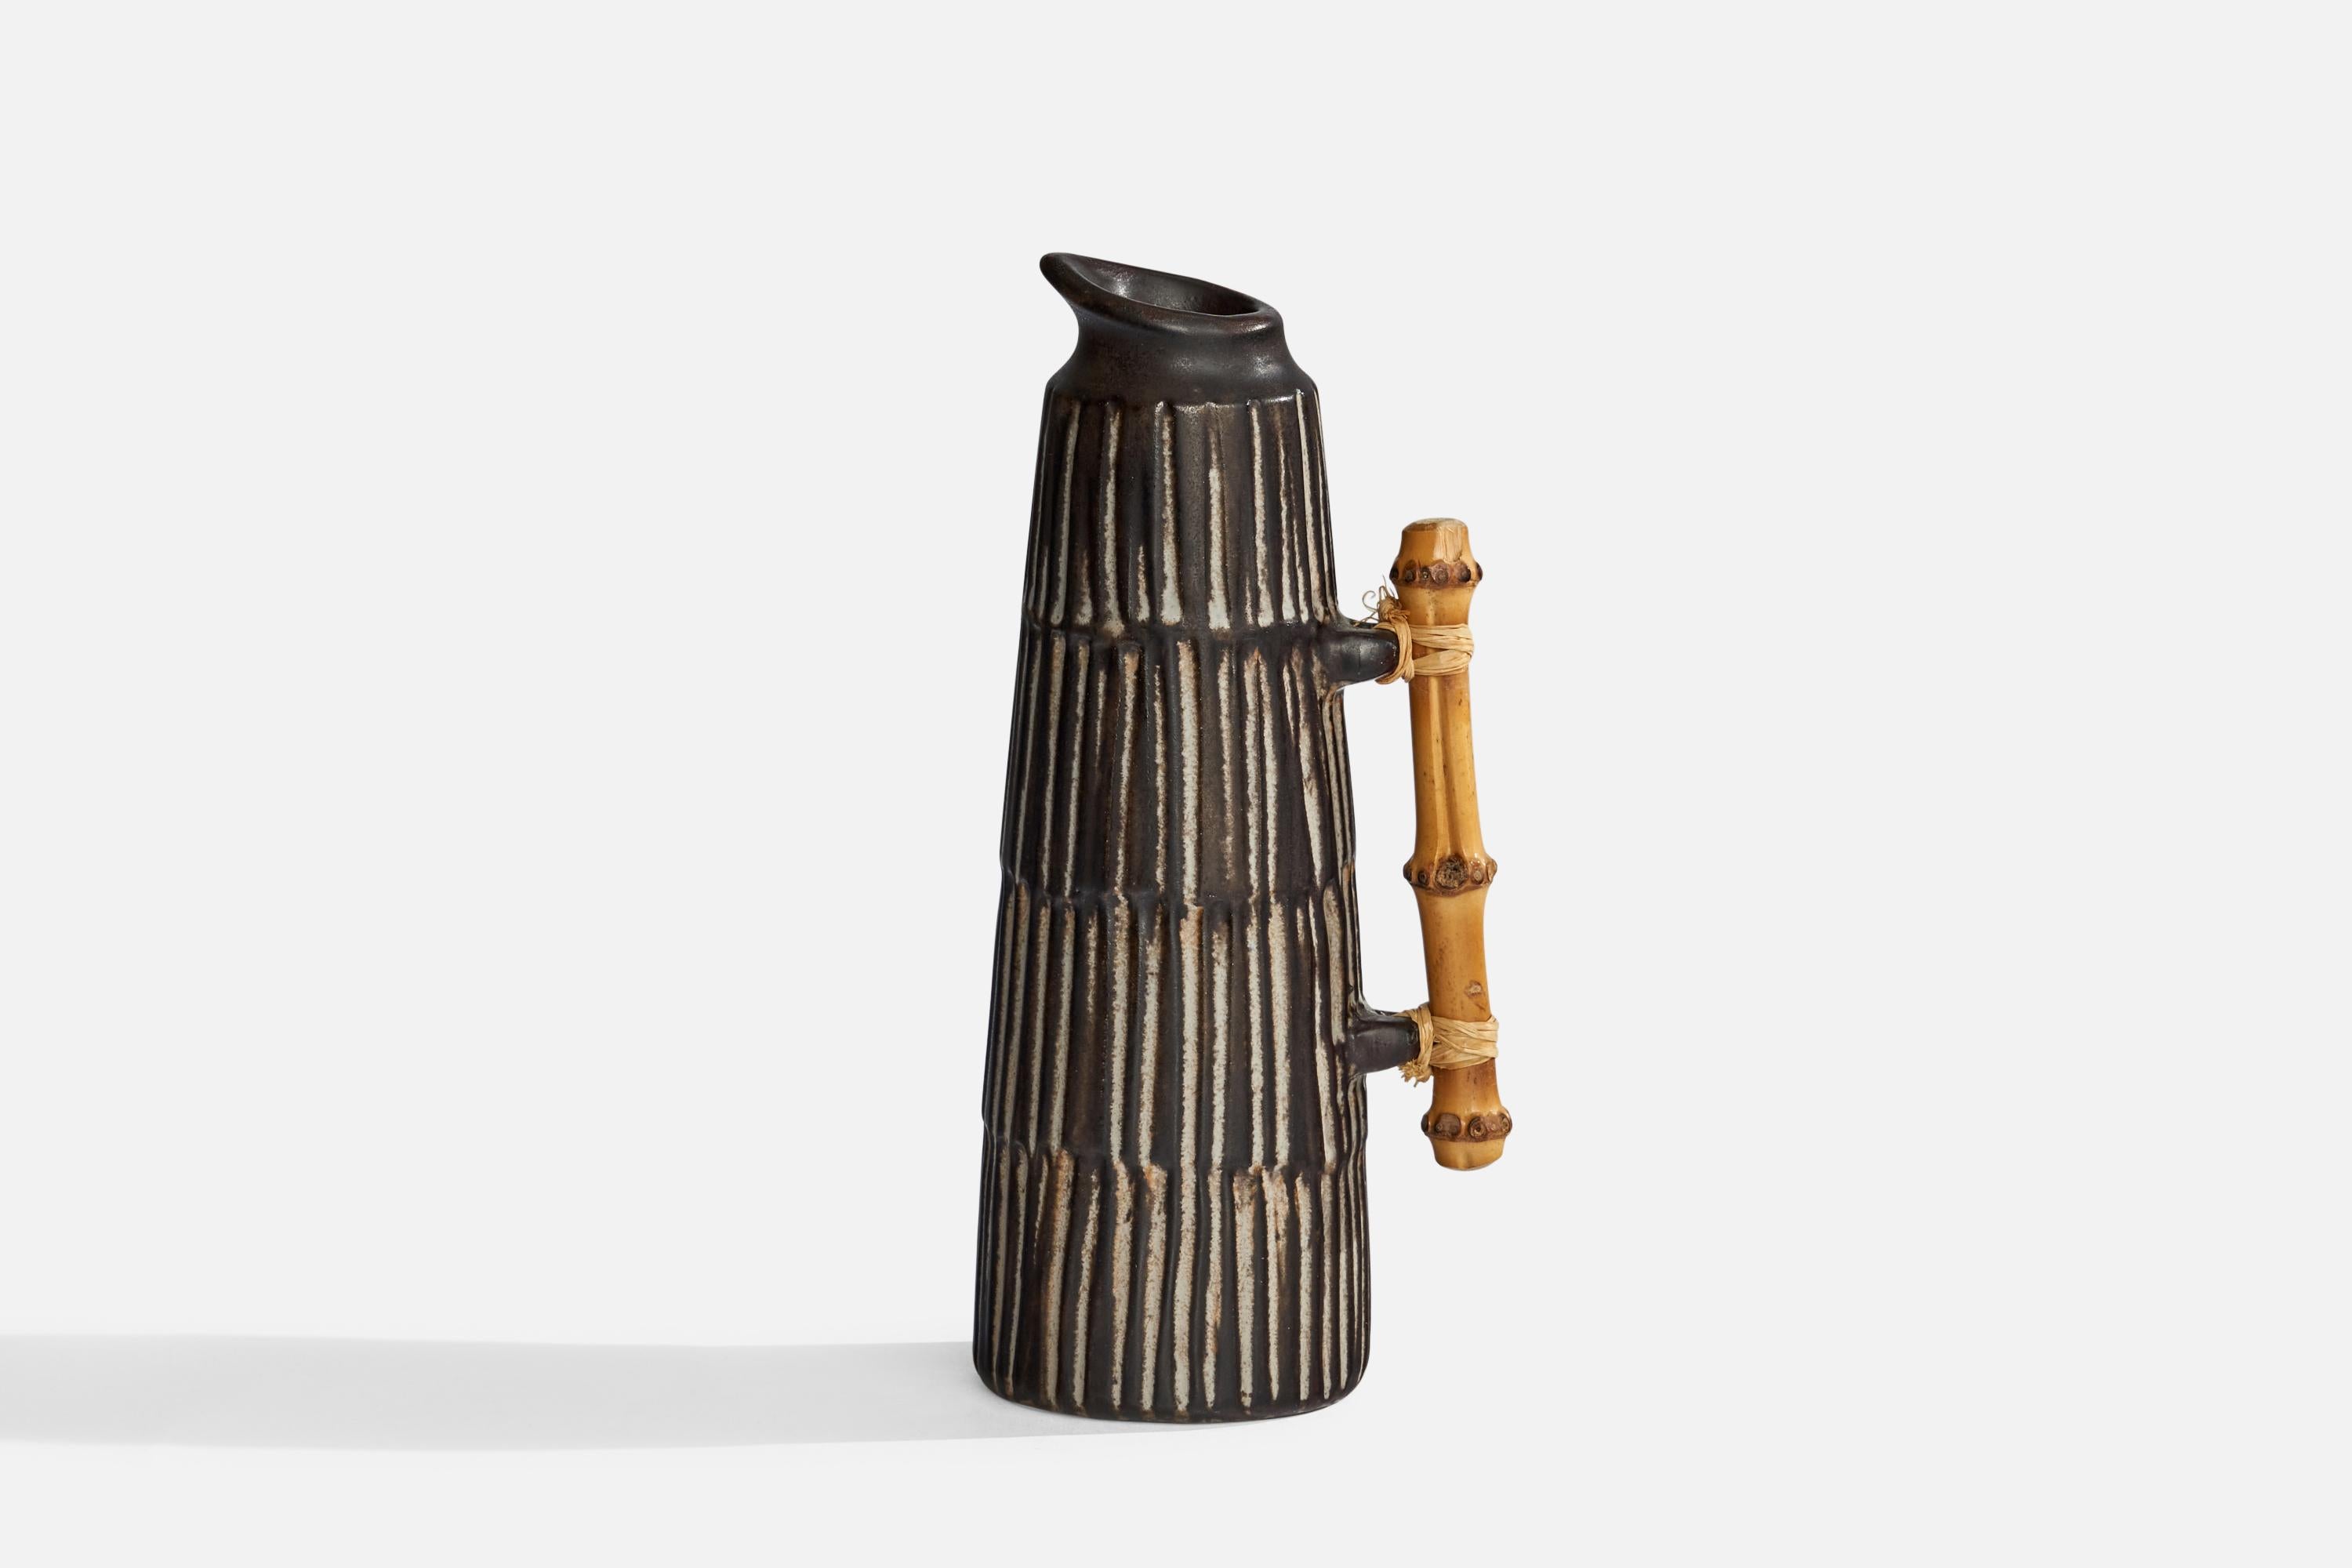 Kleiner Krug aus schwarzer, grau glasierter Keramik und Bambus, entworfen von Einer Hellerøe und hergestellt von BR Keramik, Dänemark, ca. 1960er Jahre